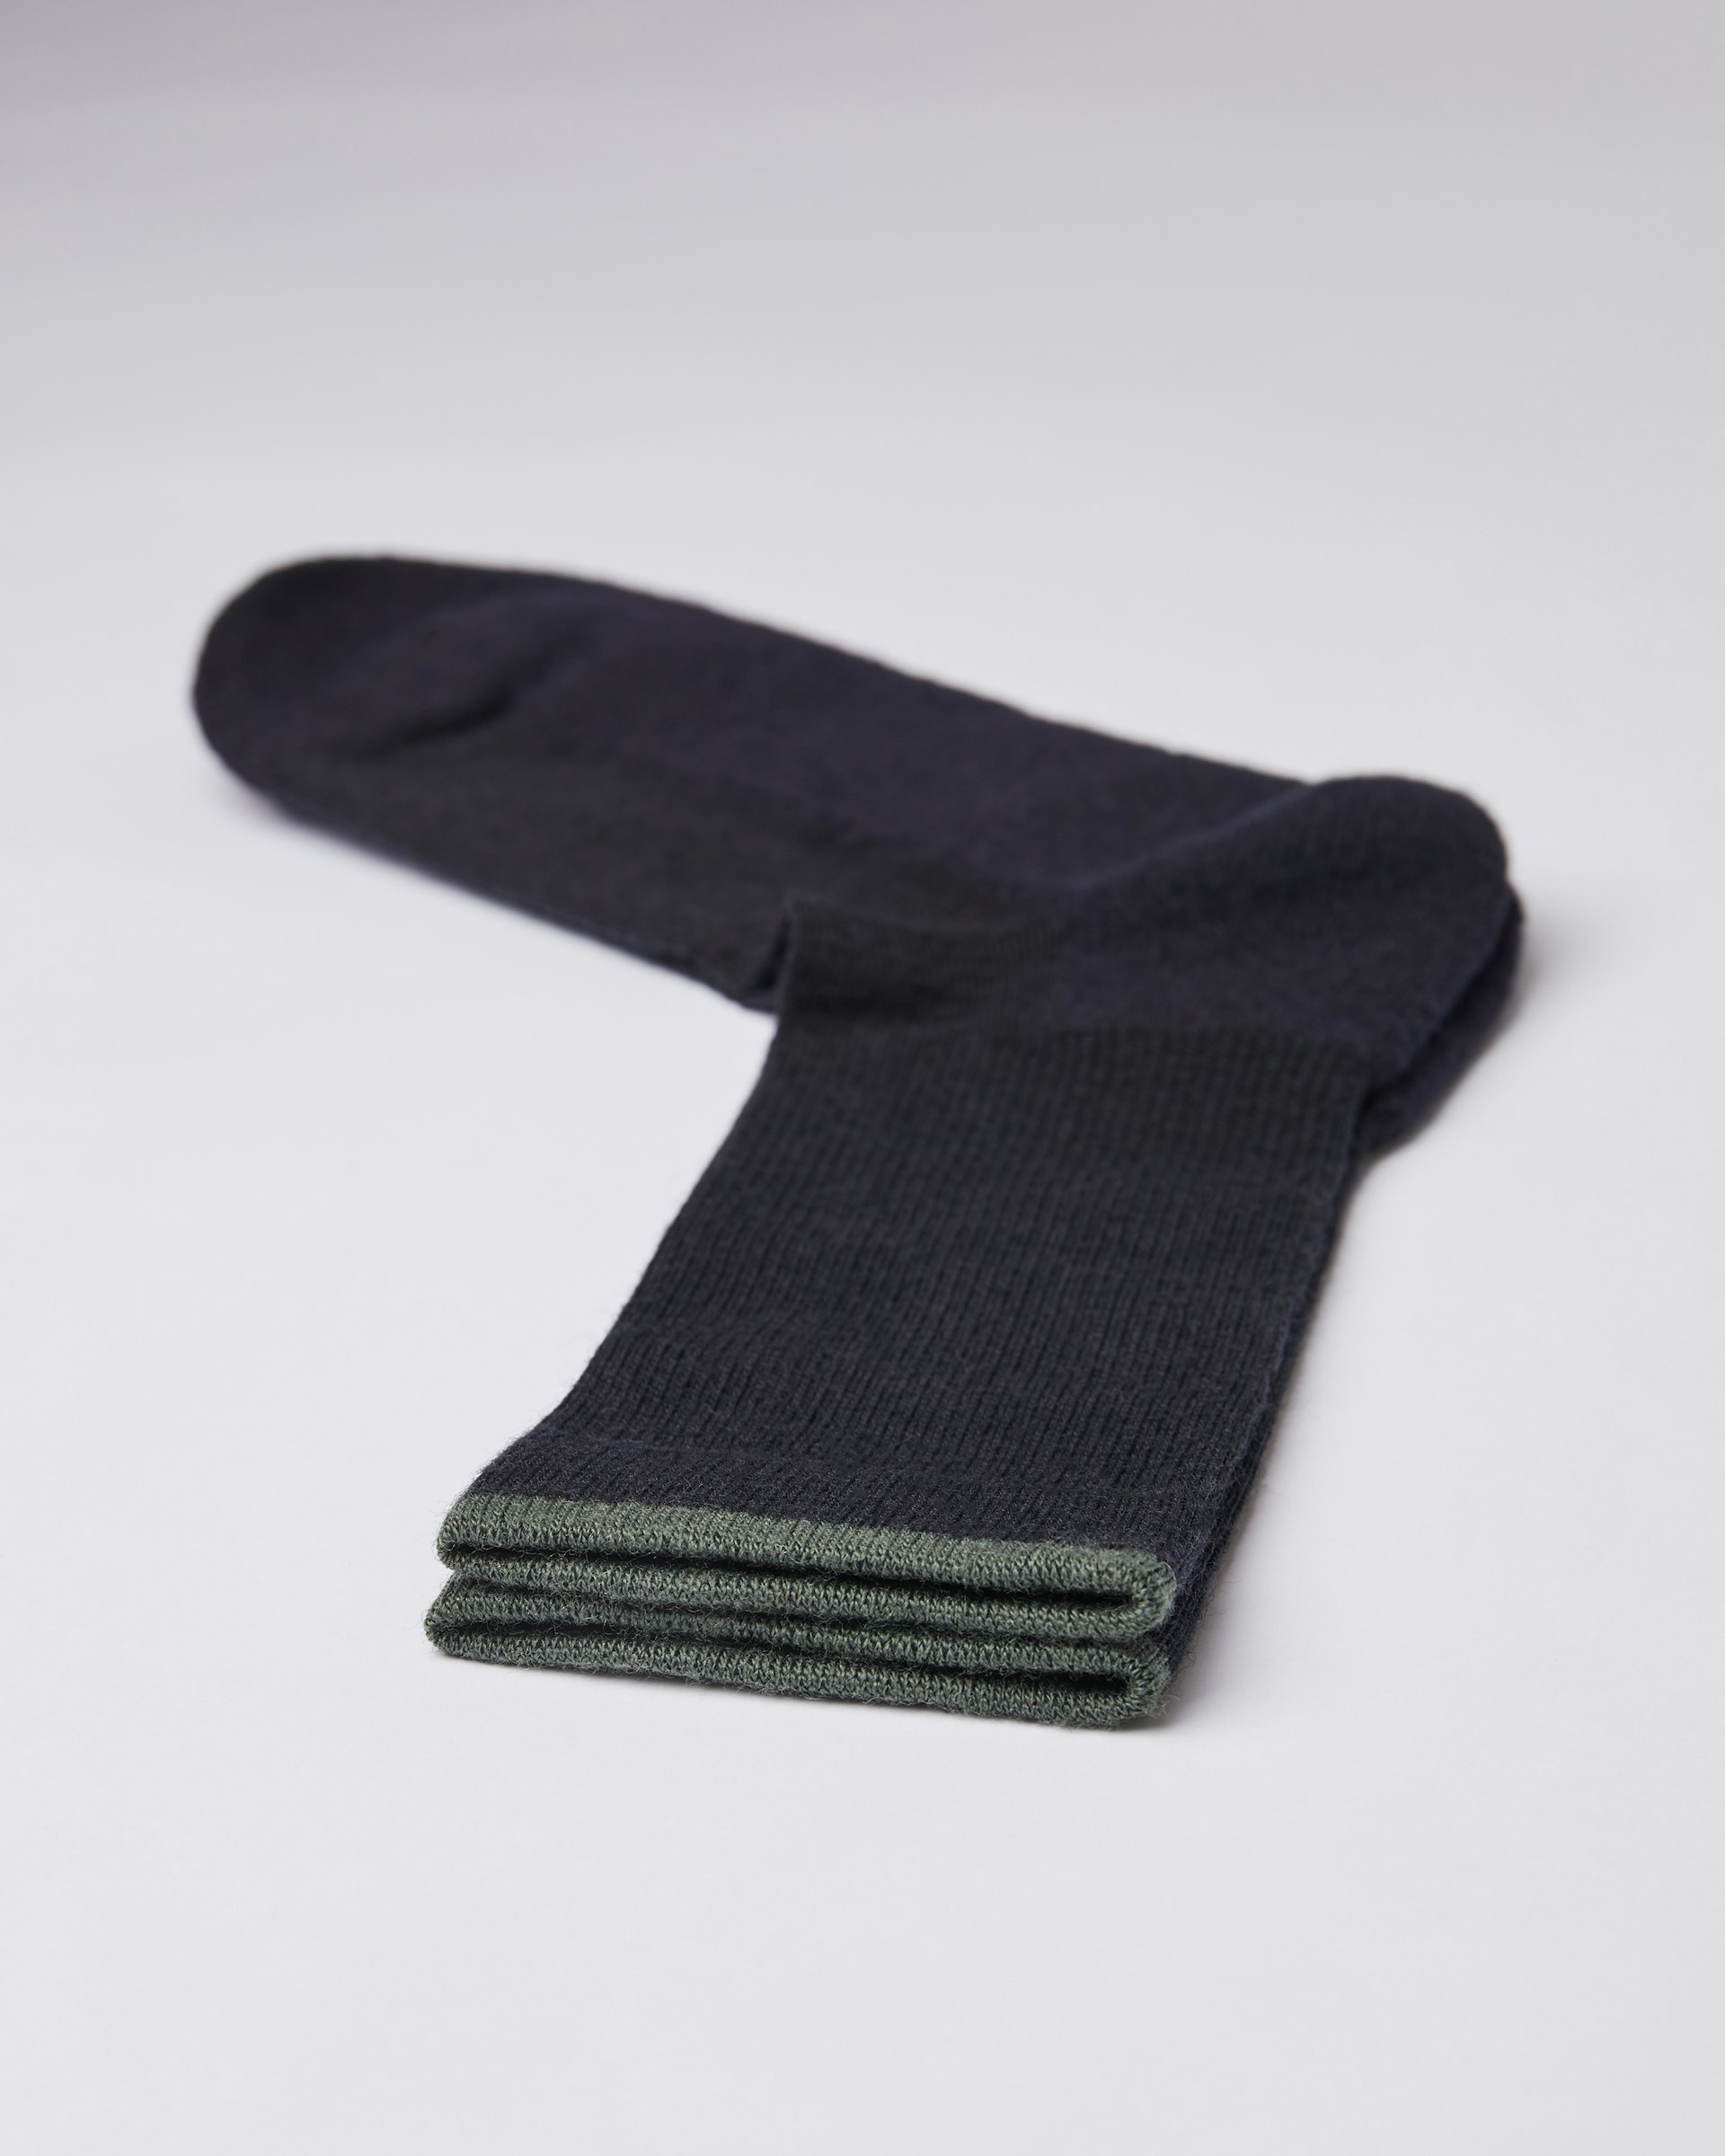 Wool Sock ist farbig black & green (2 oder 3)